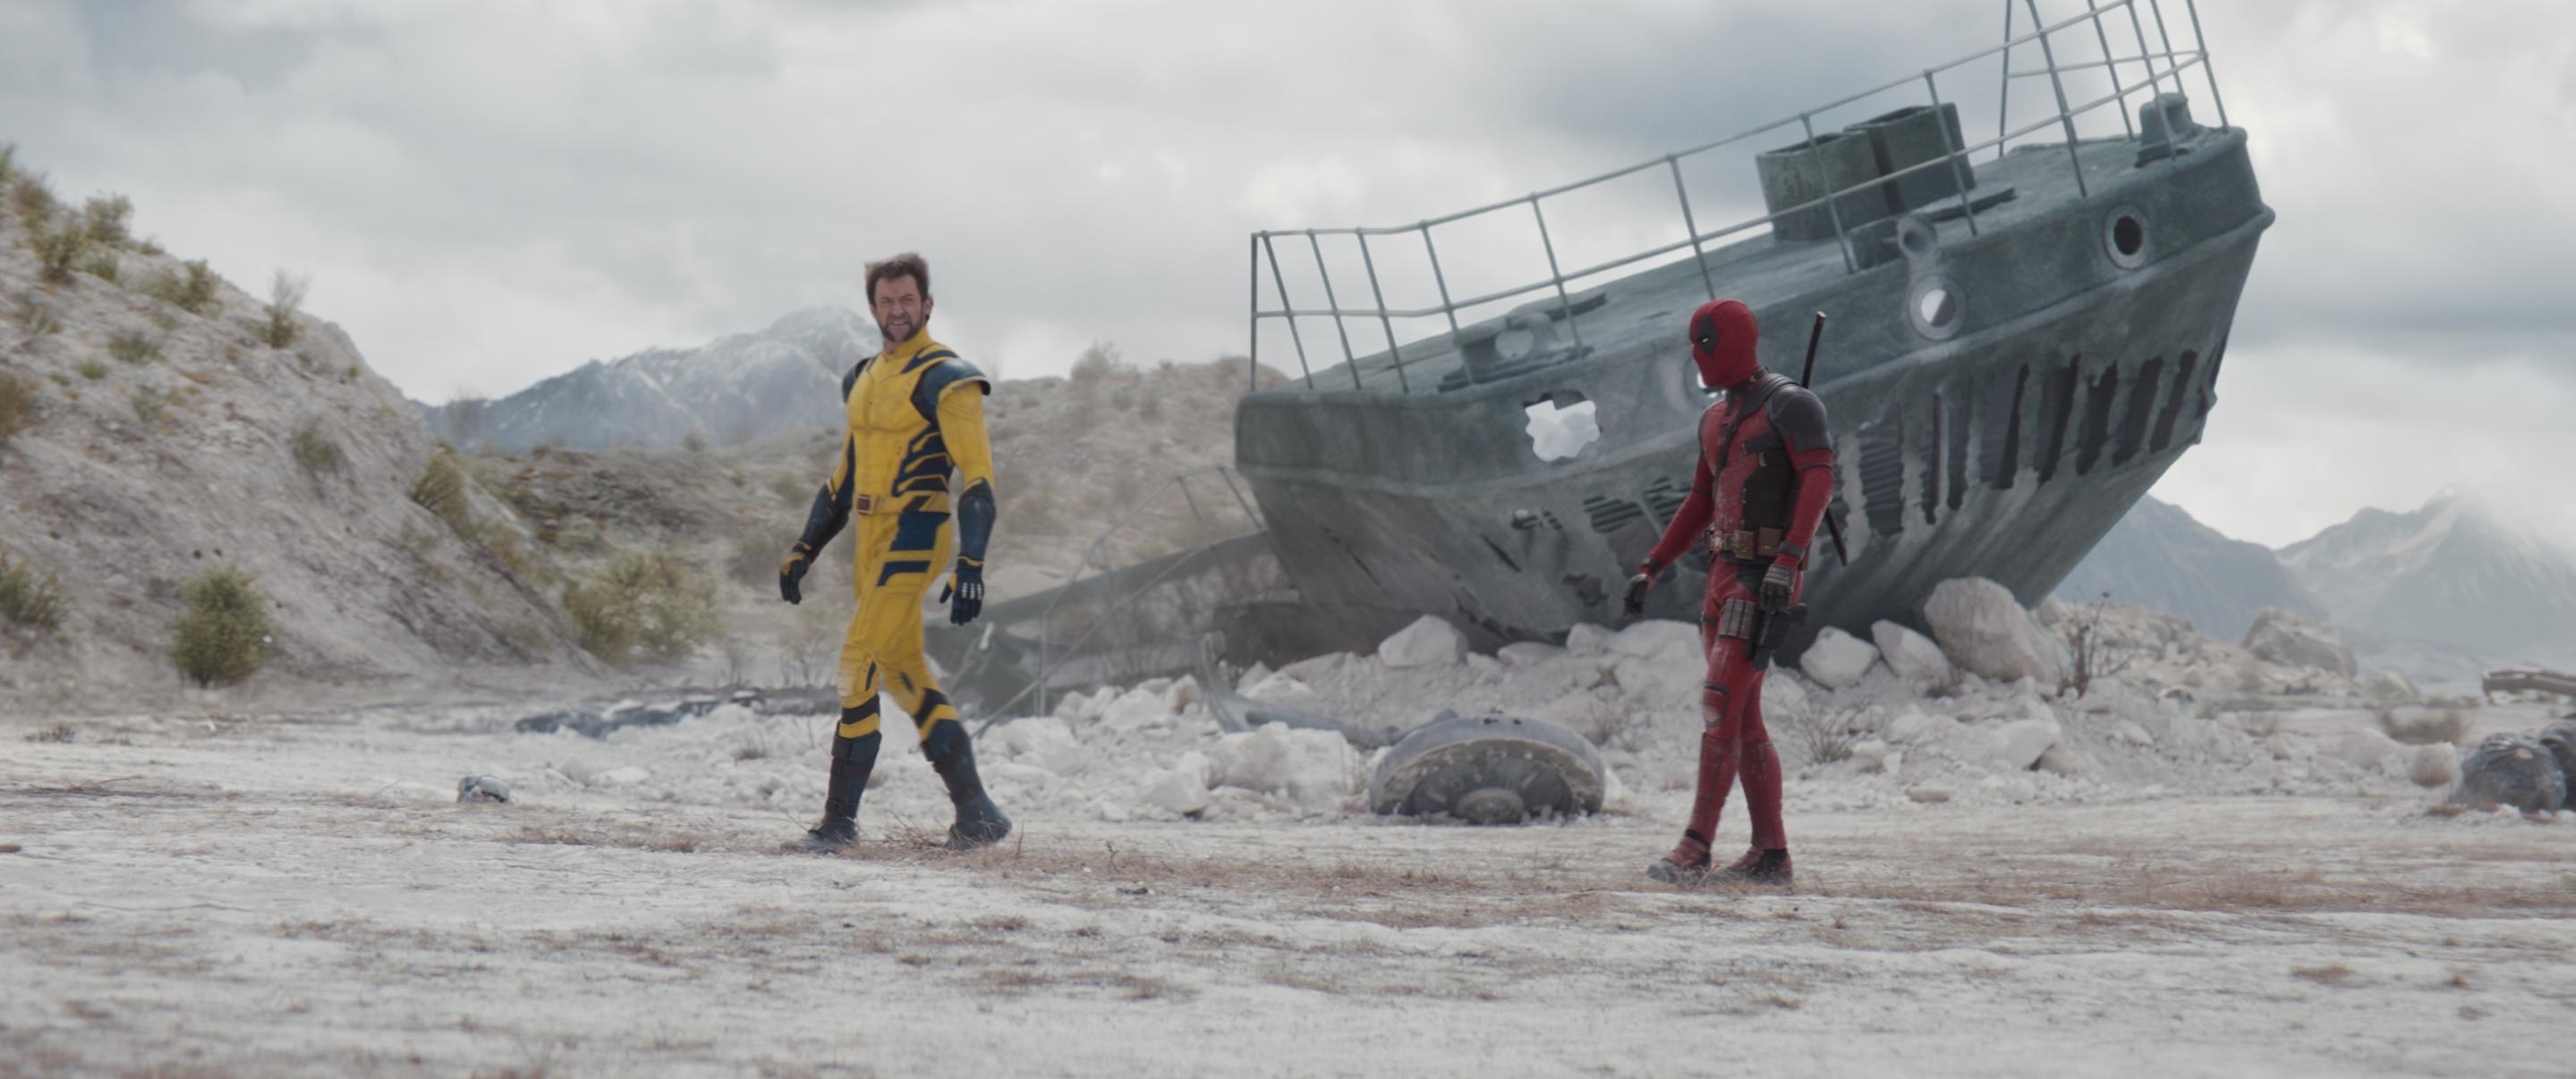 Hugh Jackman as Wolverine, left, makes his MCU debut in Deadpool & Wolverine, also starring Ryan Reynolds.